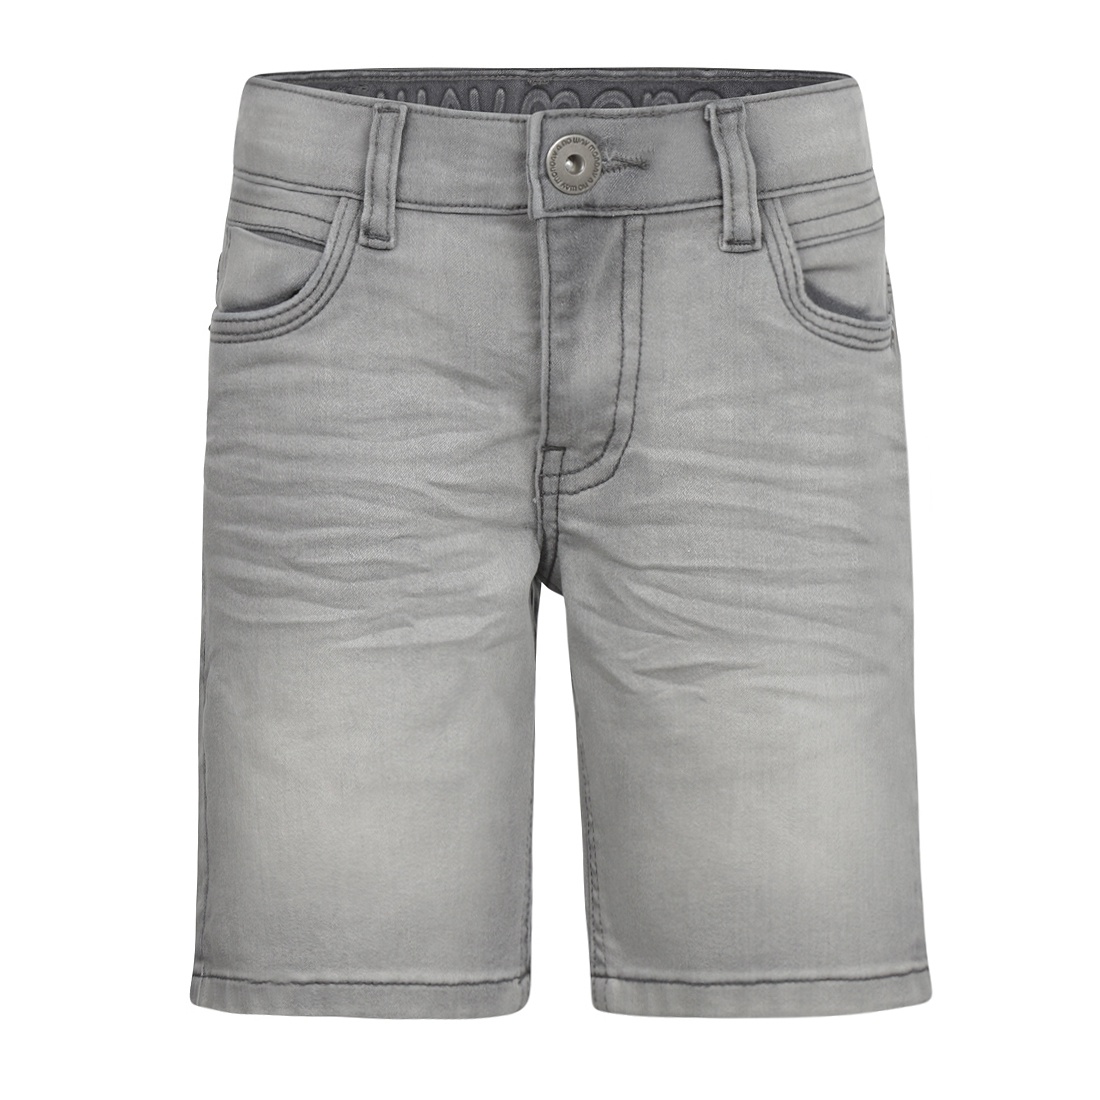 No Way Monday jongens jeans short grijs slim fit | No Way Monday - No Way  Monday Kinderkleding